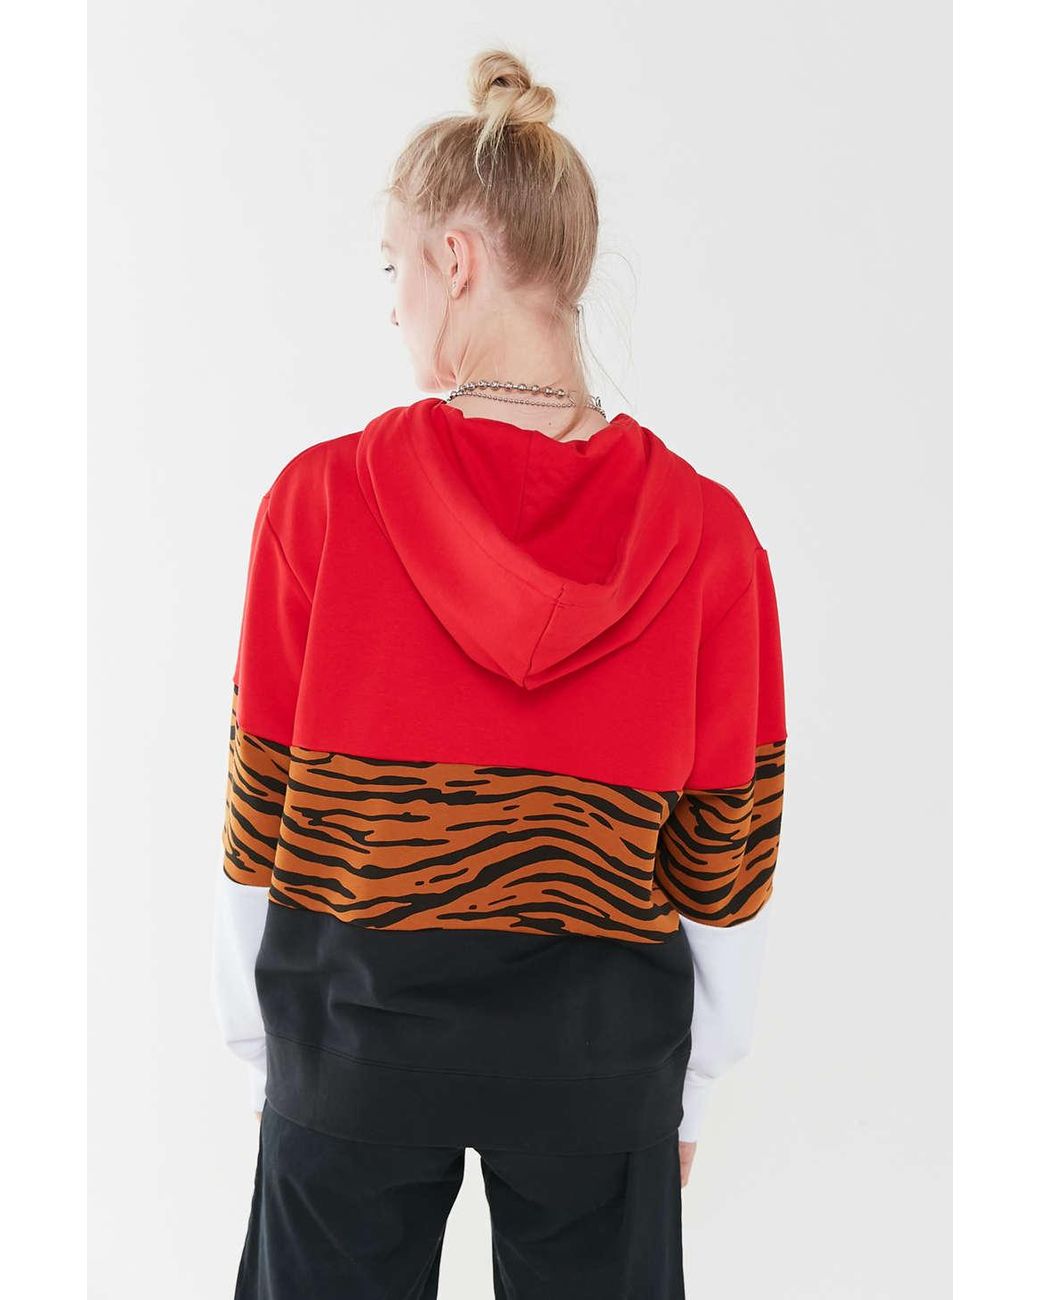 Nike Colorblock Animal Print Hoodie Sweatshirt in Red | Lyst